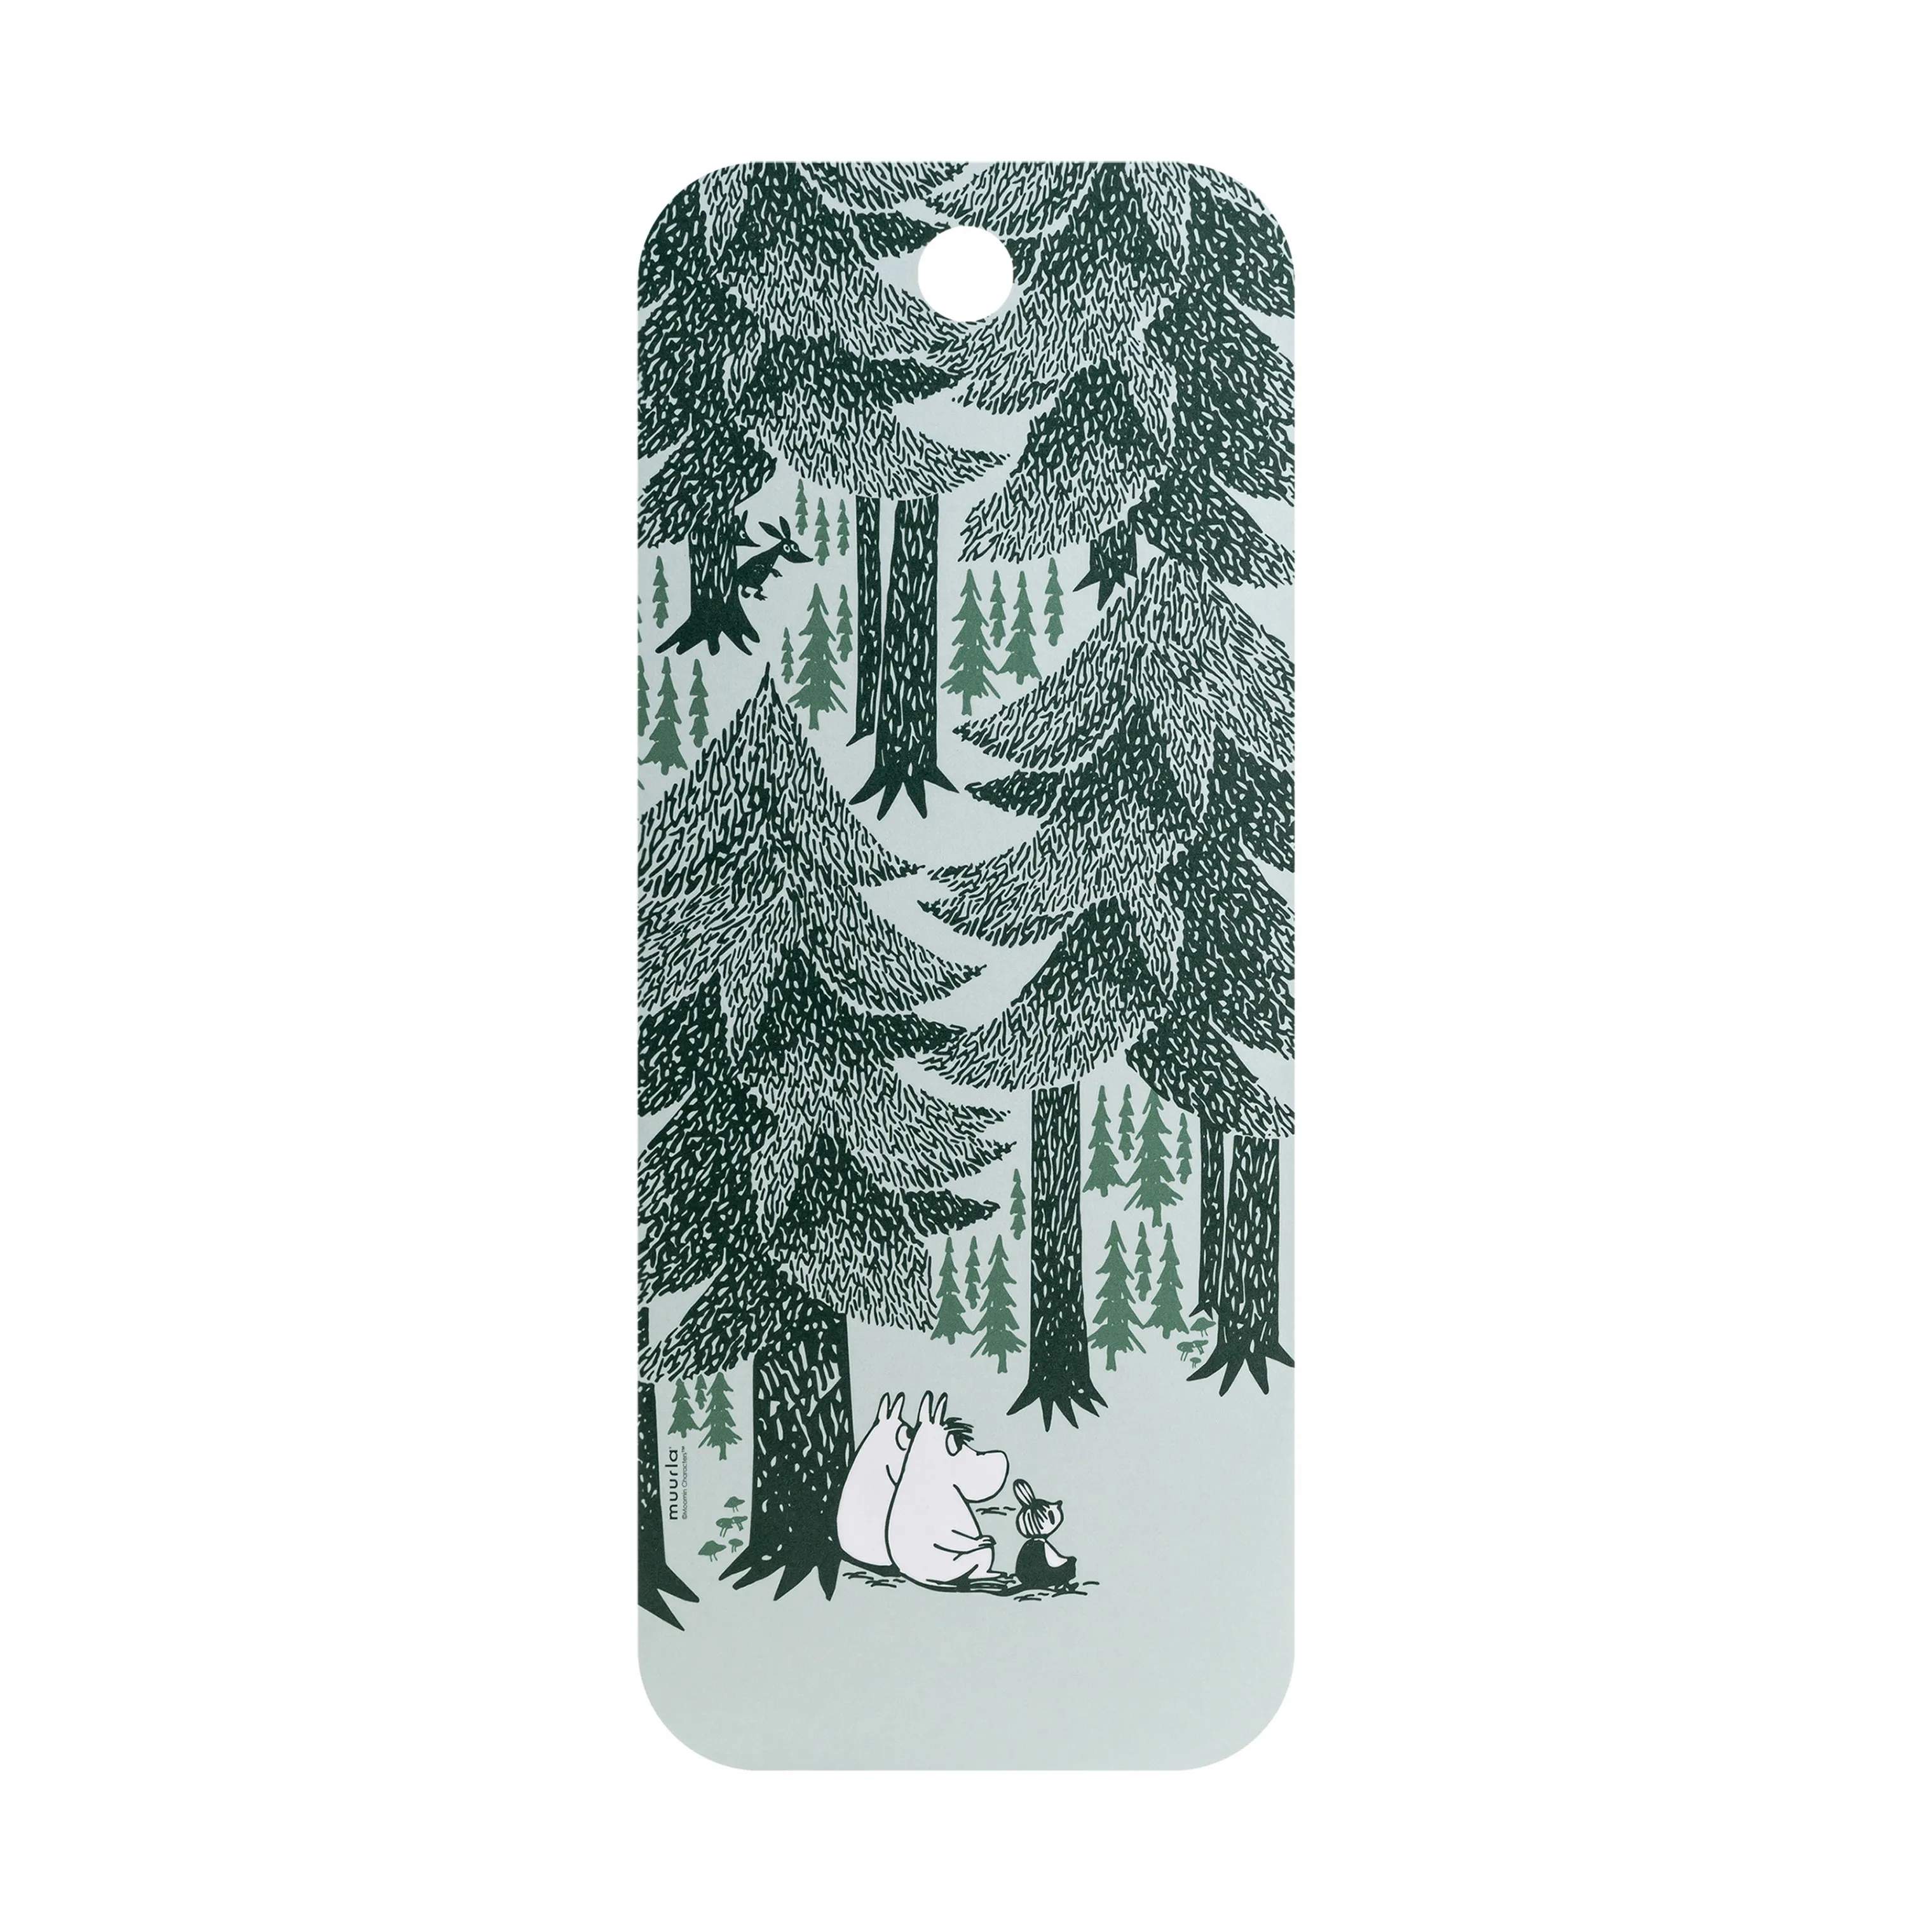 Moomin Skærebræt - In The Depth Of The Forest, in the depth of the forest, large